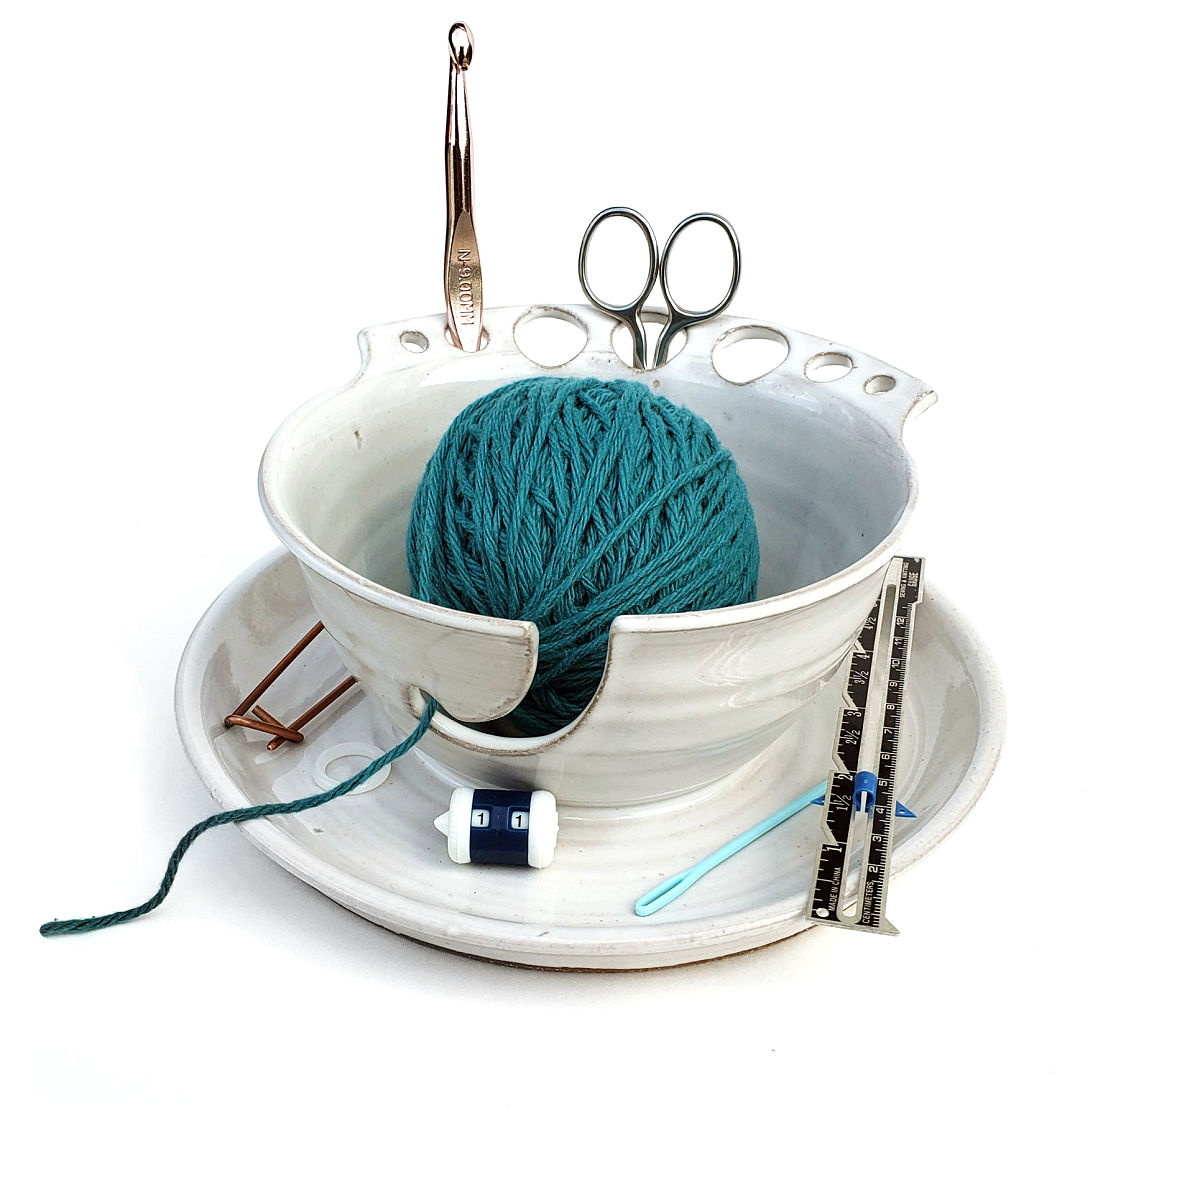 Knitting Caddy & Yarn Bowl